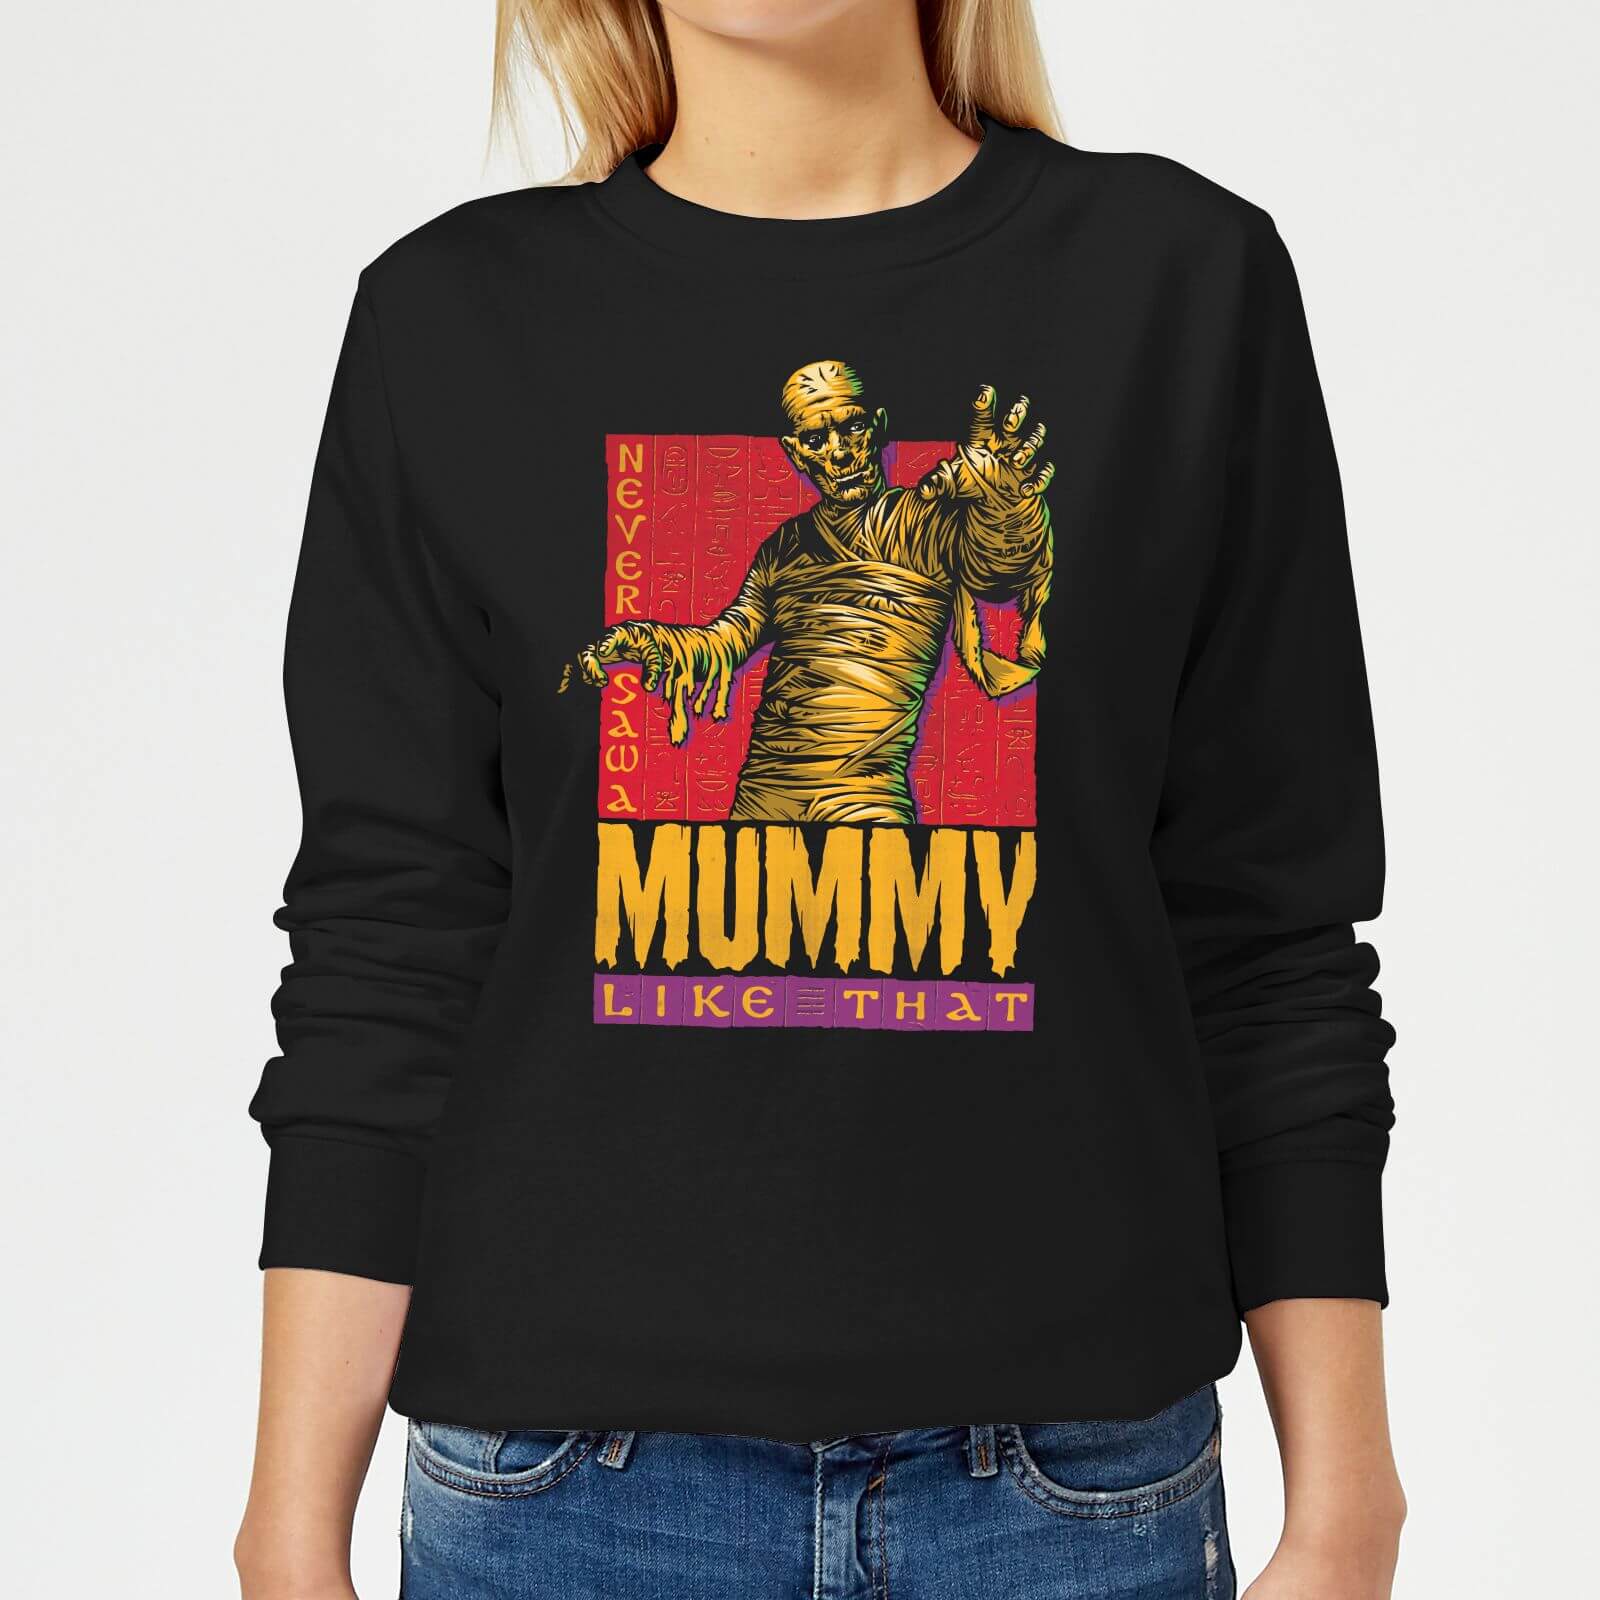 Universal Monsters The Mummy Retro Women's Sweatshirt - Black - XS - Black